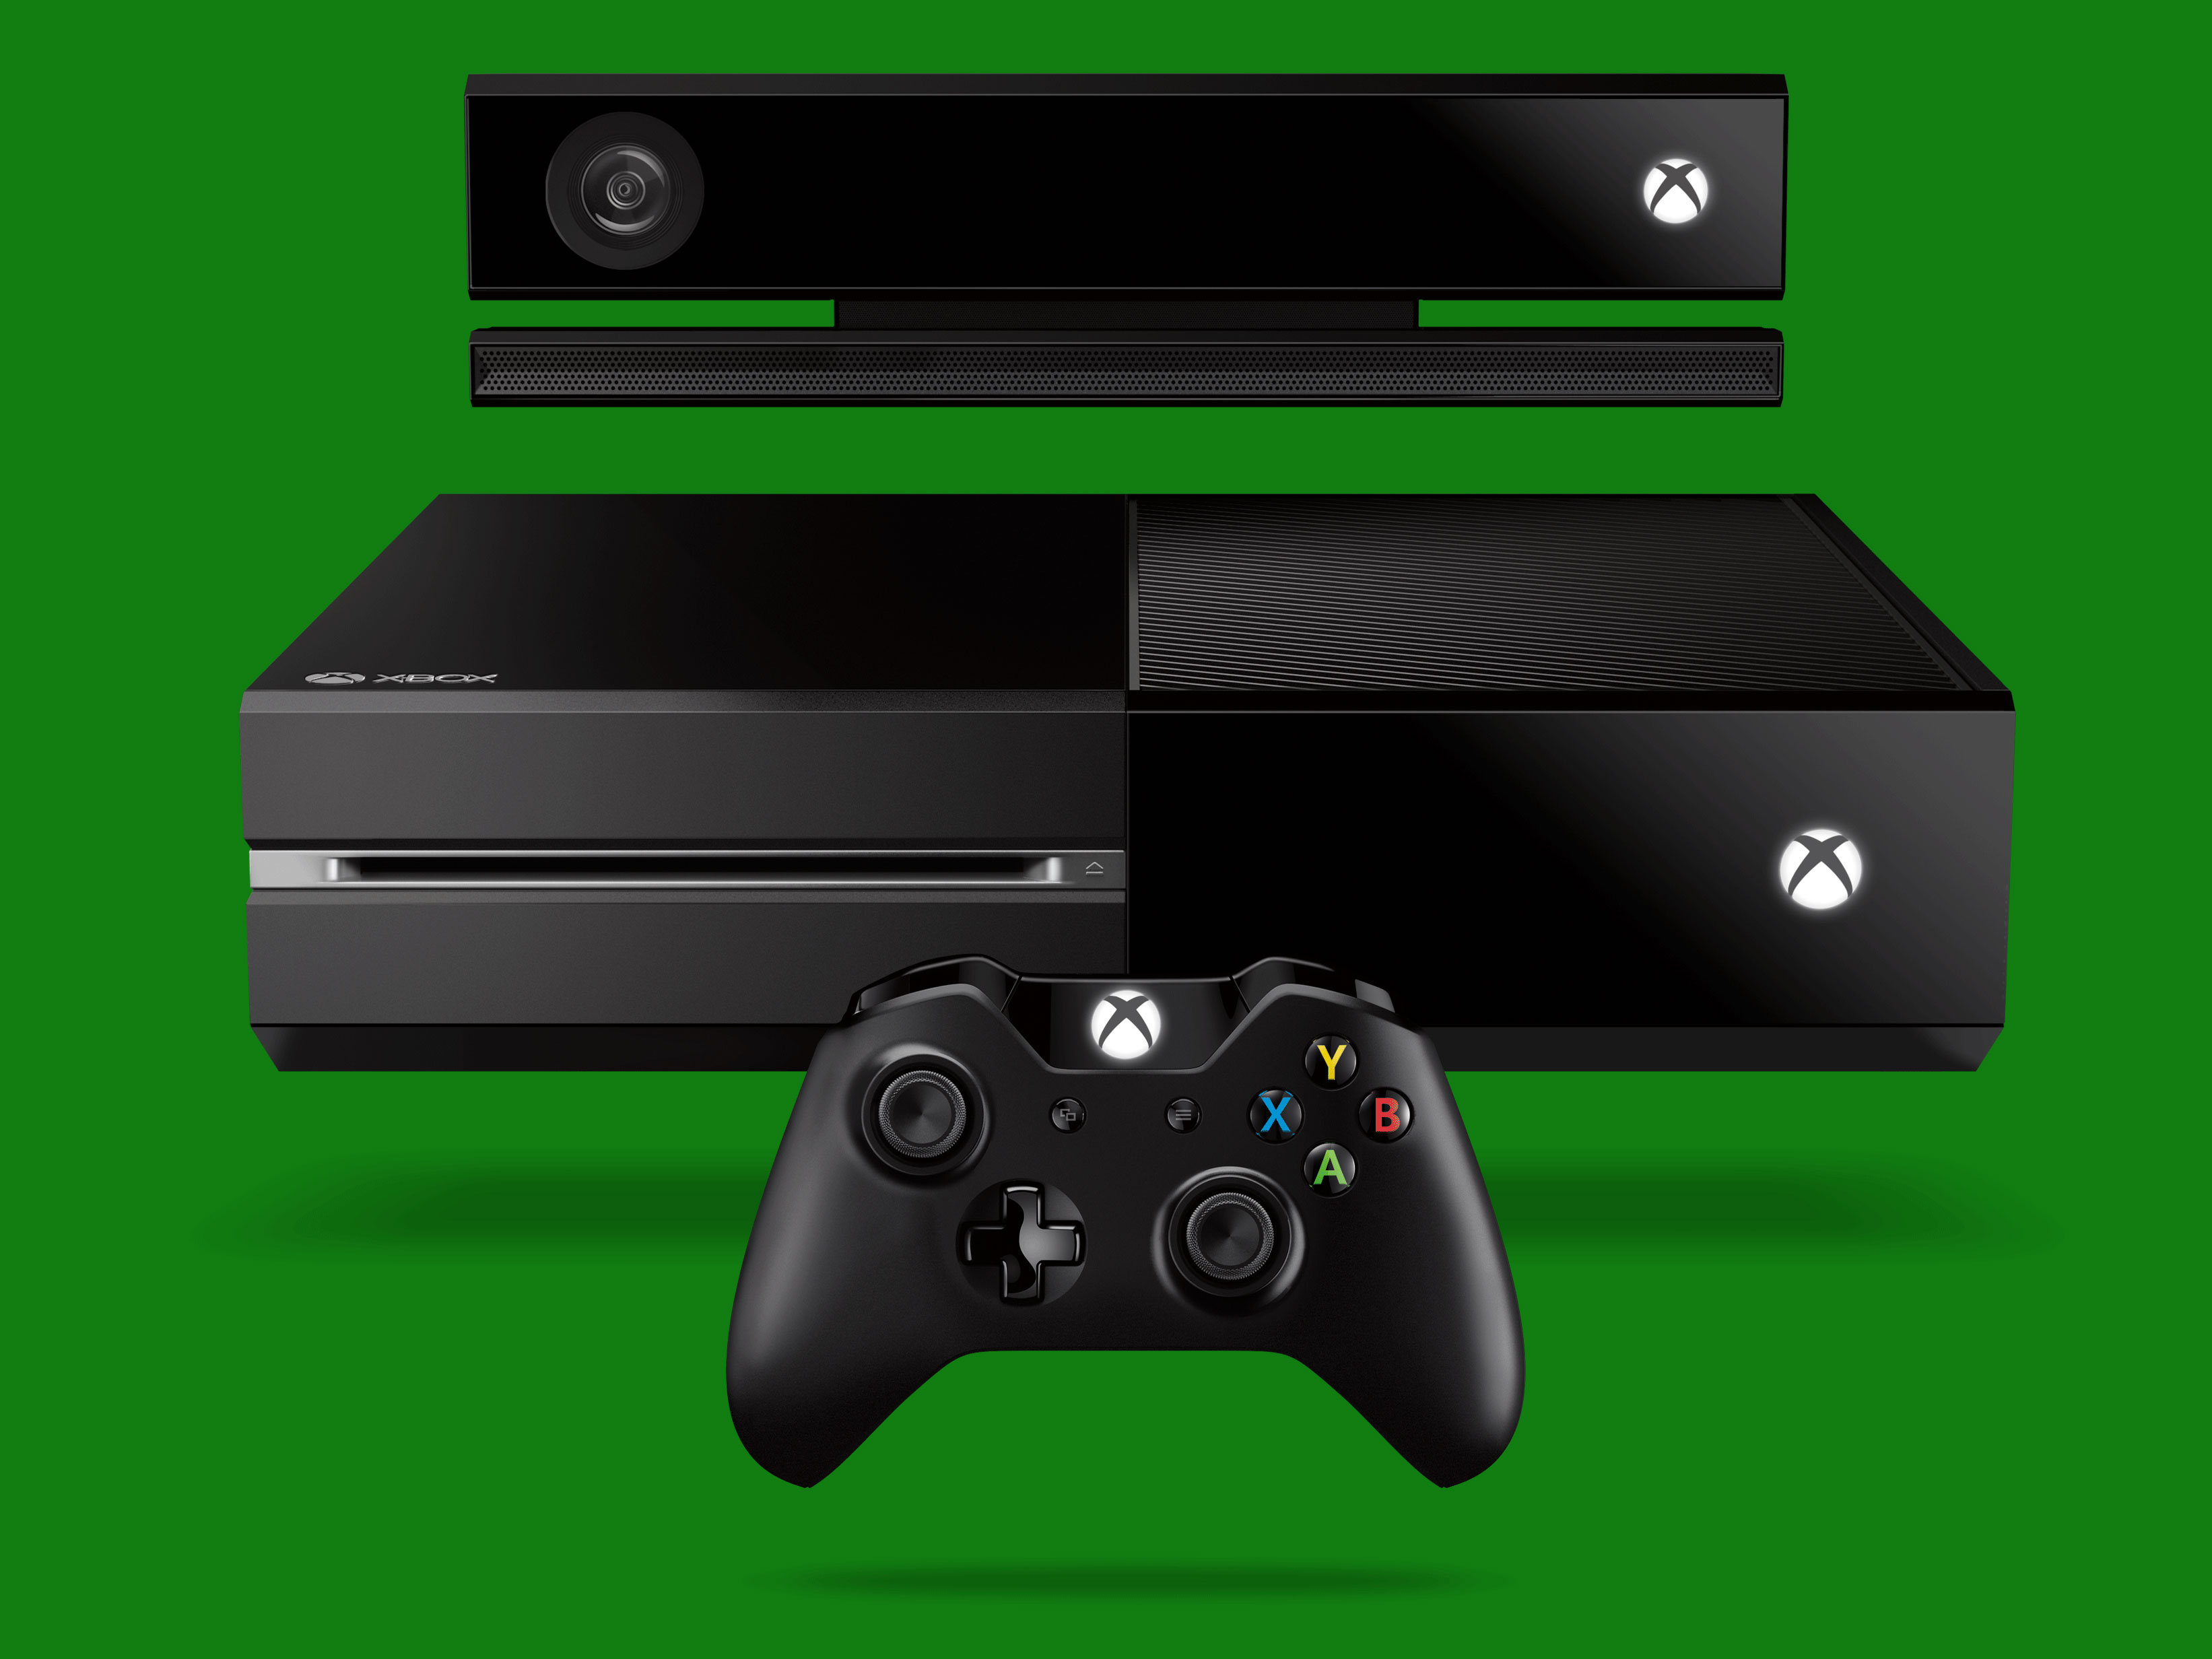 La Xbox 360 Slim arrive le 16 juillet